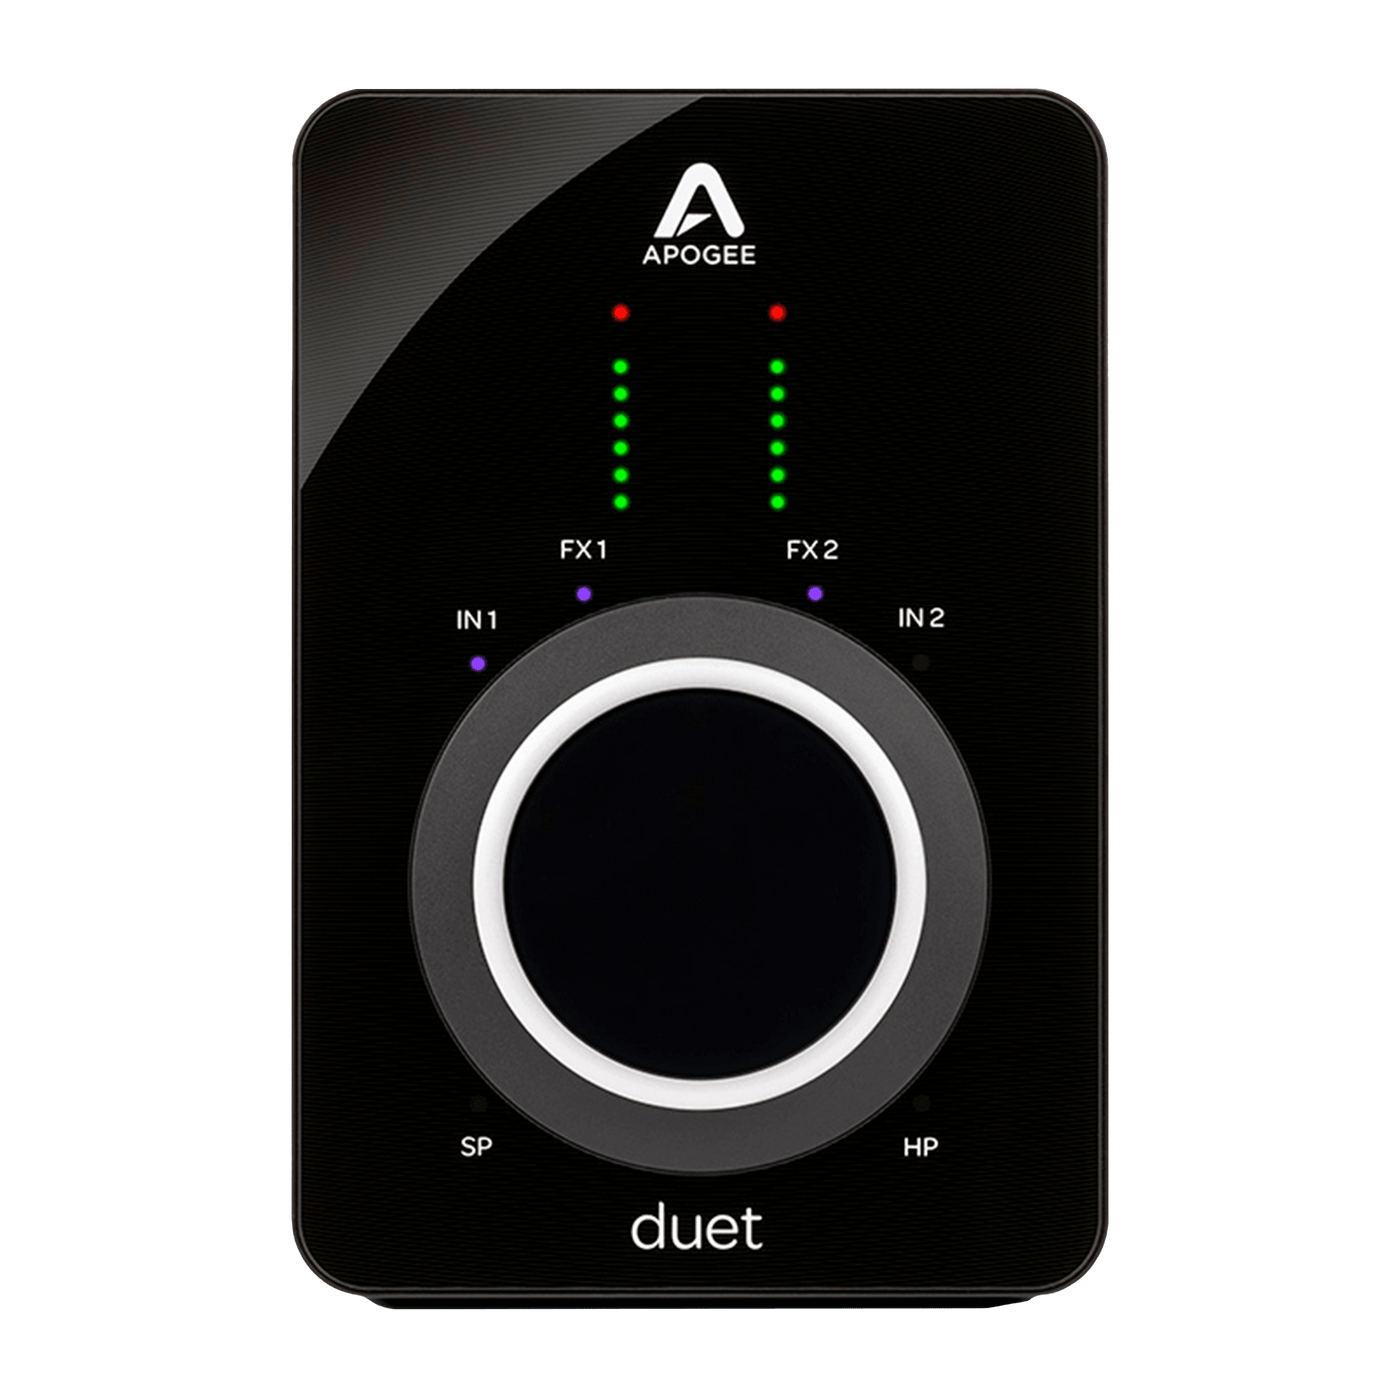 Apogee Duet 3 - $739990 - Gearhub - En 2007, el Apogee Duet original rompió las expectativas de lo que podría ser una interfaz de estudio doméstico. Profesional, personal y portátil, Duet revolucionó la grabación independiente y empoderó a los músicos, productores e ingenieros con la legendaria calidad de sonido Apogee, un diseño elegante y una facilidad de uso sin esfuerzo. Ahora, el nuevo Duet 3 trae el rendimiento y las funciones de Apogee de próxima generación a un hermoso diseño de perfil ultrabajo. Du